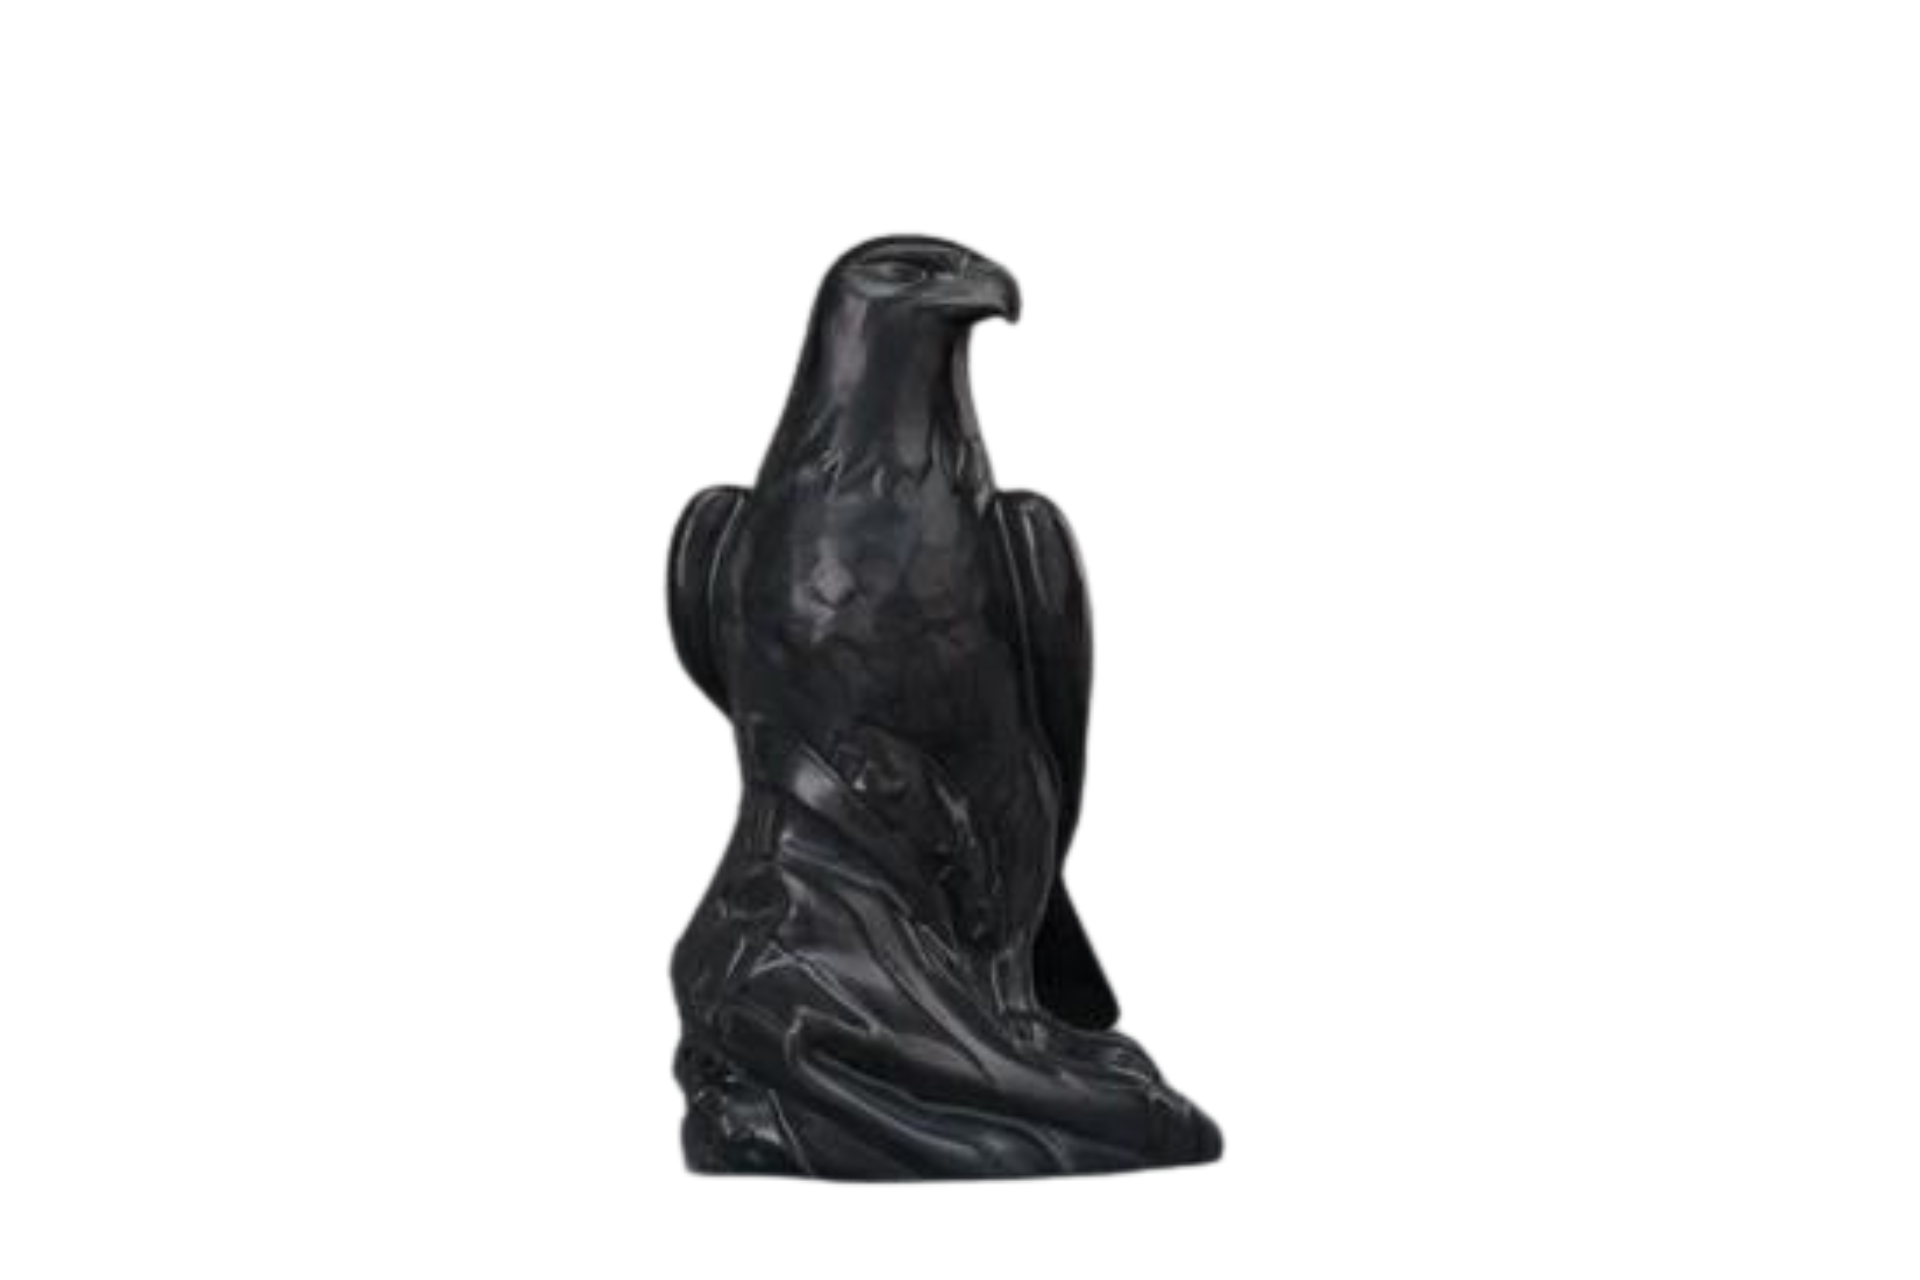 Kaufen schwarz-matt Urne Adler Keramik